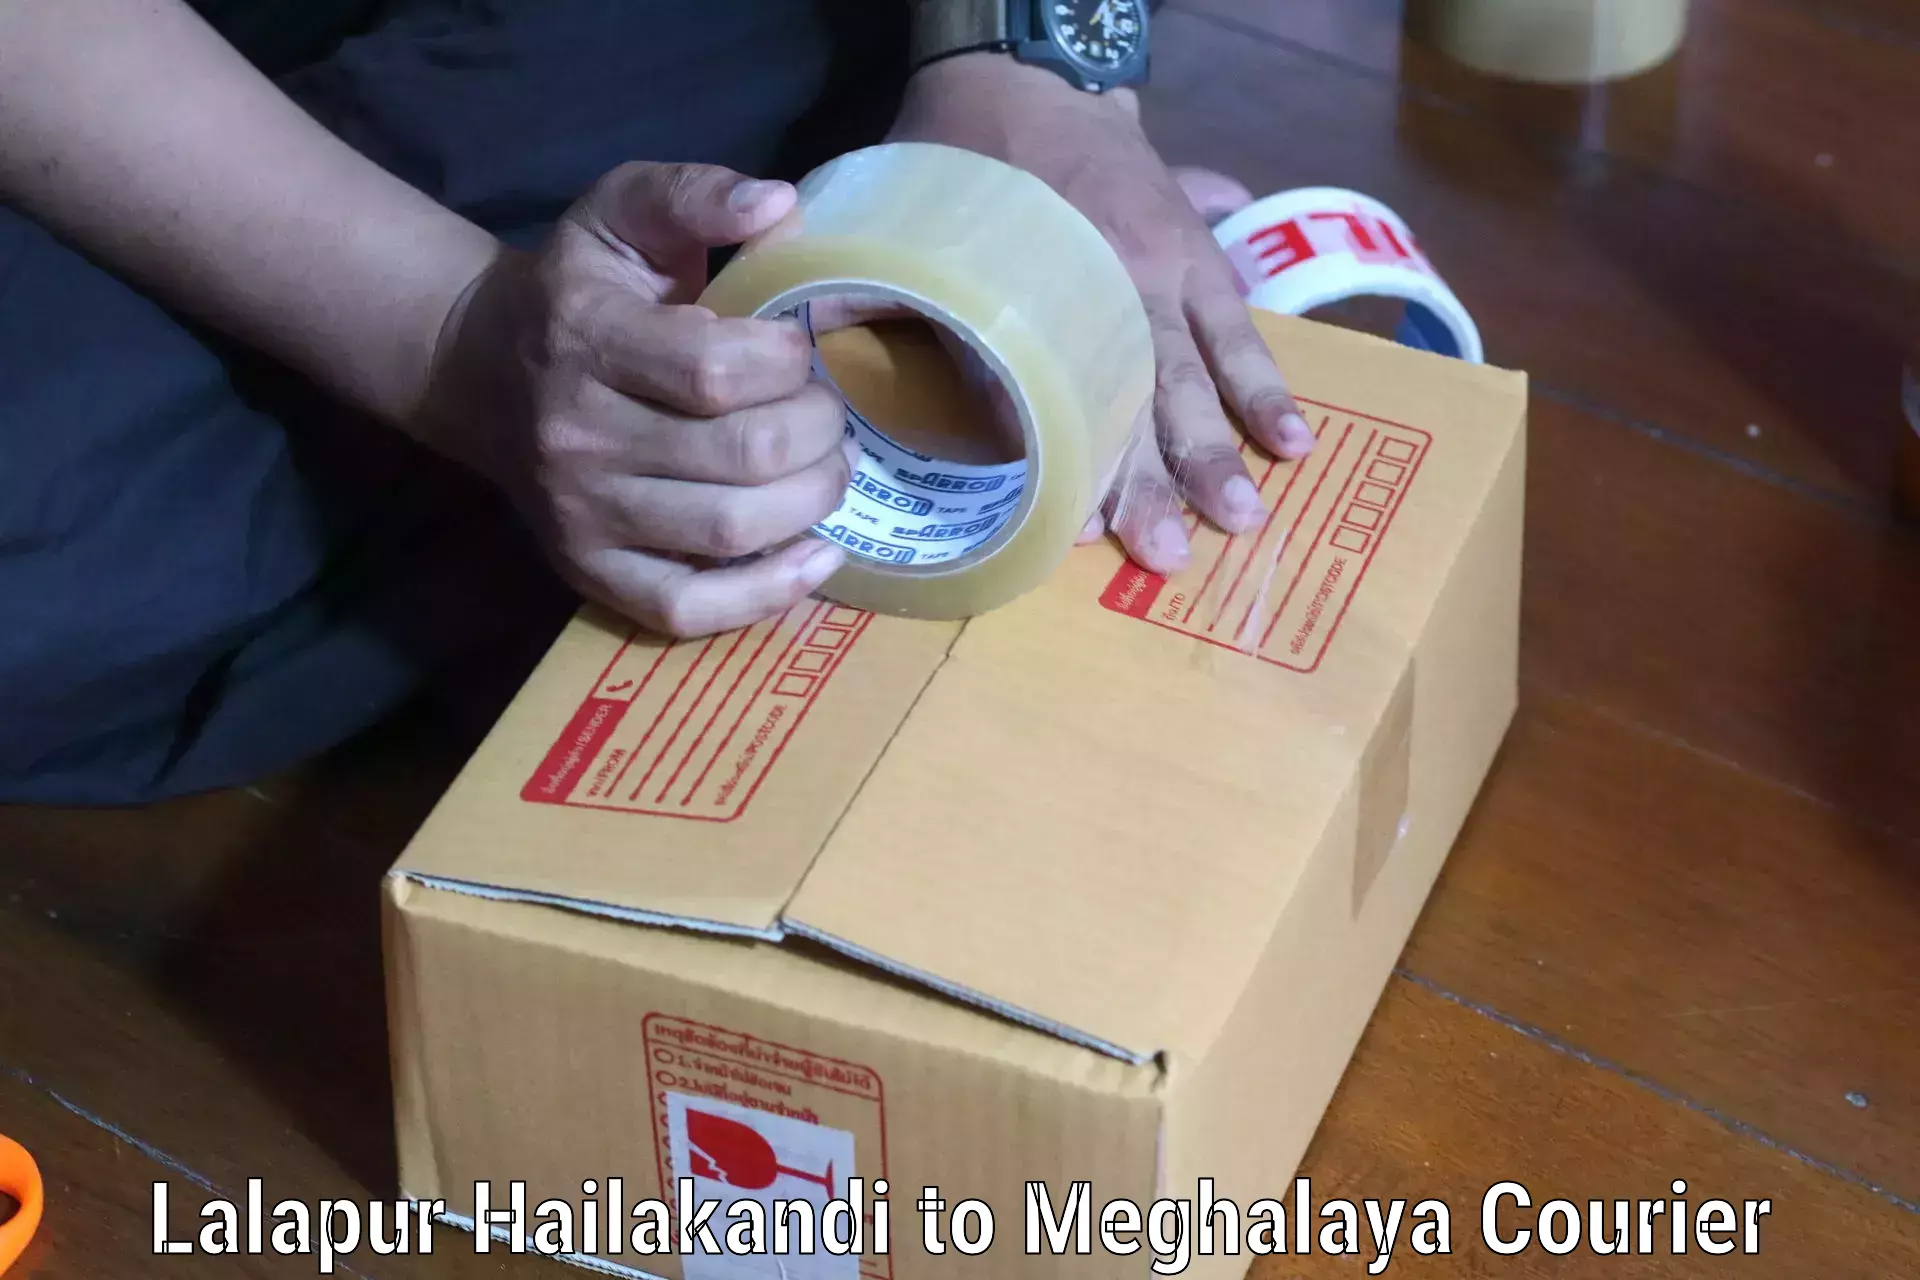 Digital courier platforms Lalapur Hailakandi to NIT Meghalaya